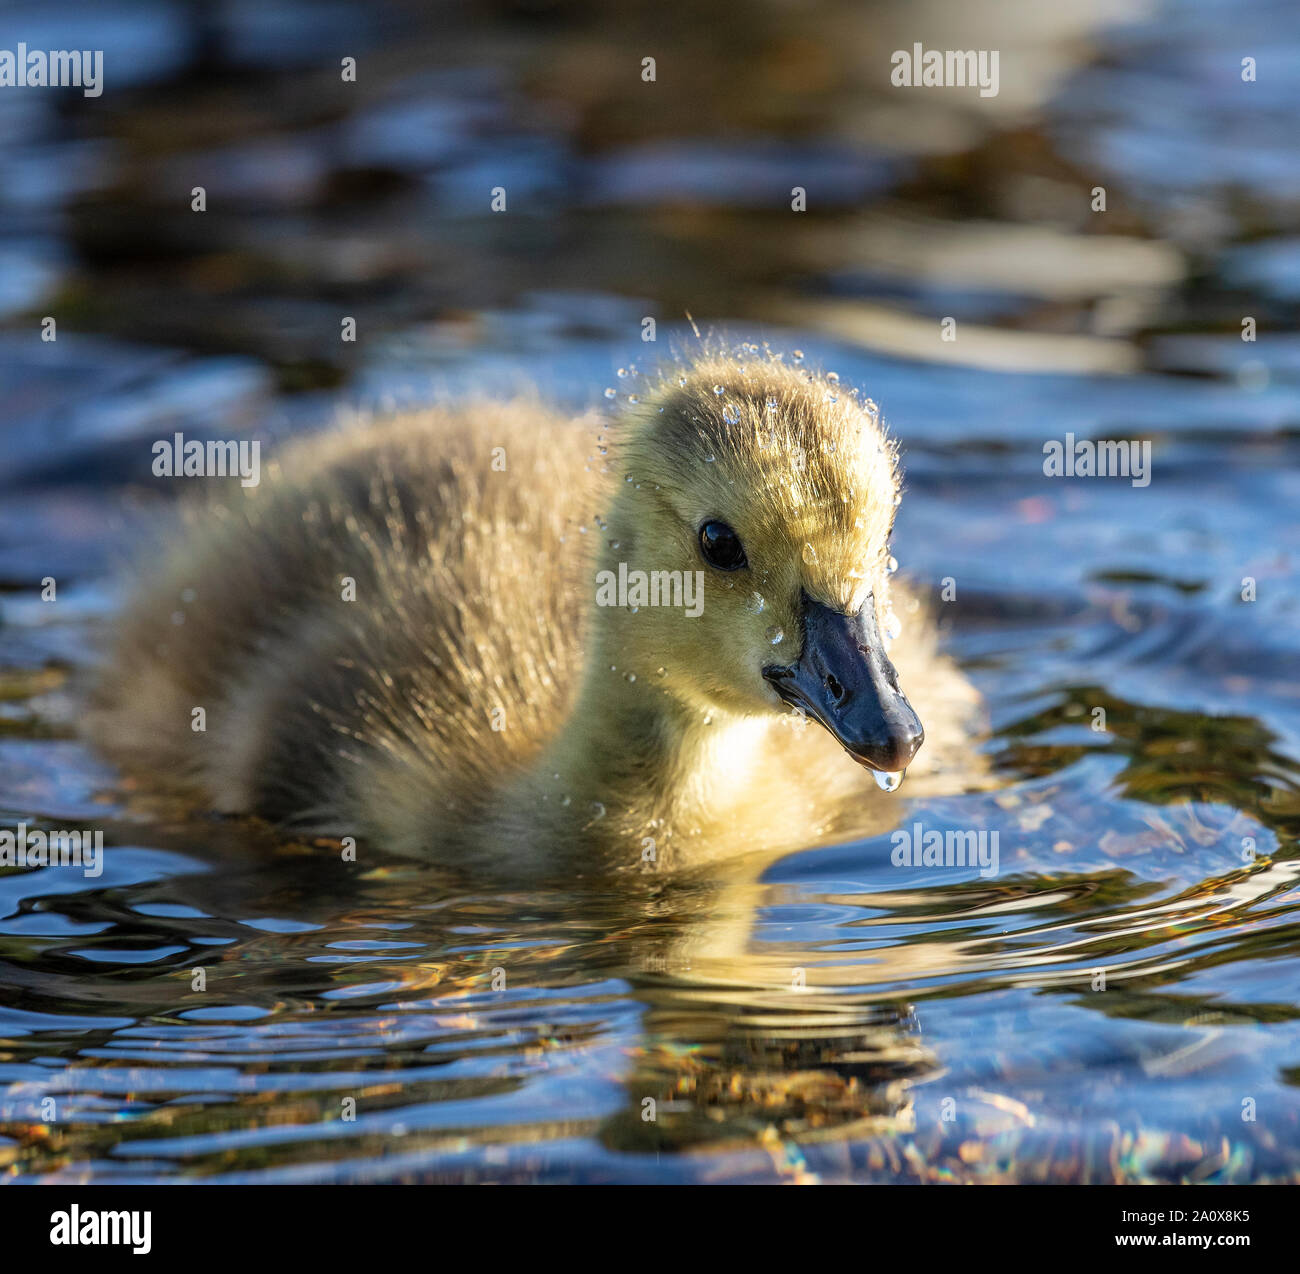 Gosling ist ein spezieller Begriff für ein kleines Baby Gans, in der Regel noch mit weichen, flauschigen Daunenfedern und nicht in der Lage zu fliegen. Weil diese Küken Stockfoto